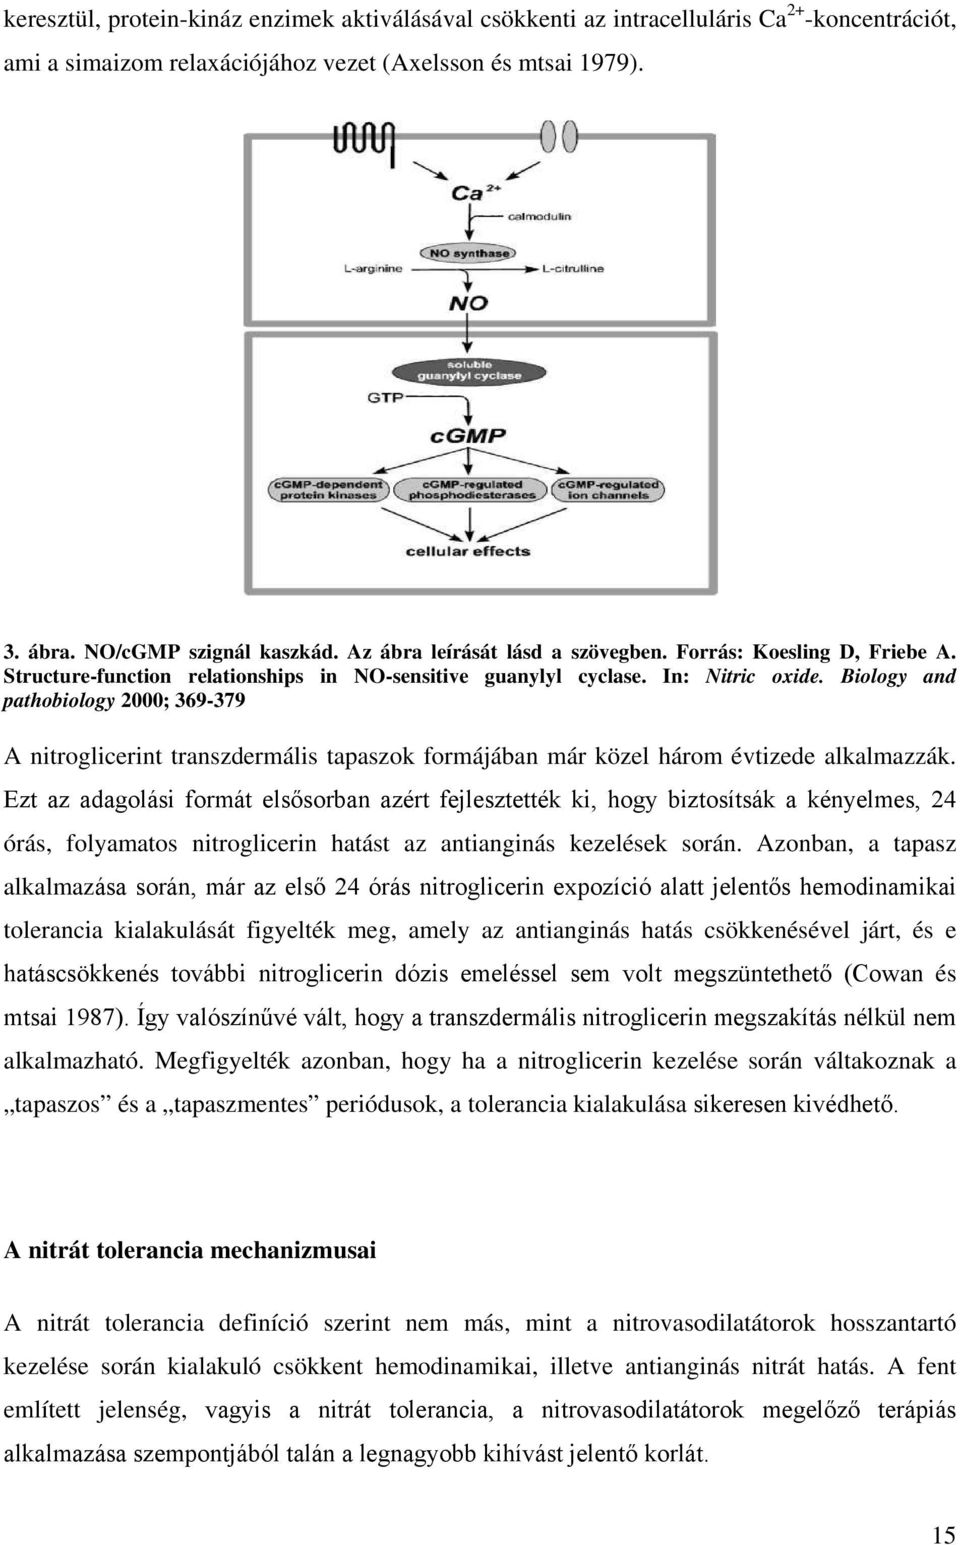 Biology and pathobiology 2000; 369-379 A nitroglicerint transzdermális tapaszok formájában már közel három évtizede alkalmazzák.